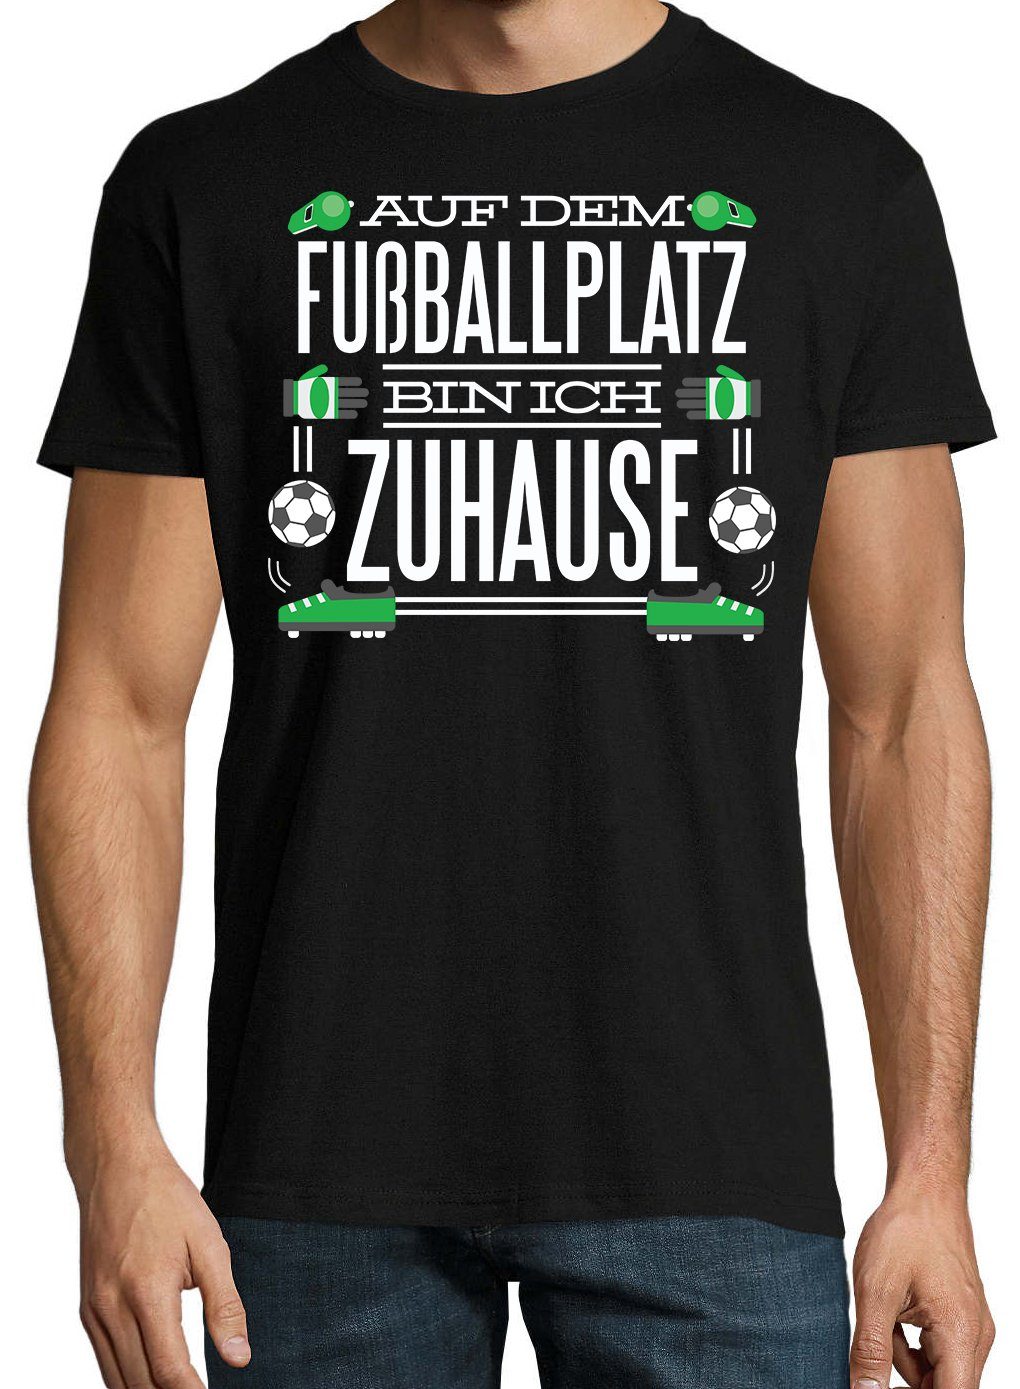 Youth Designz dem Spruch Zuhause" T-Shirt "Auf mit Fußballplatz ich T-Shirt lustigem bin Schwarz Herren